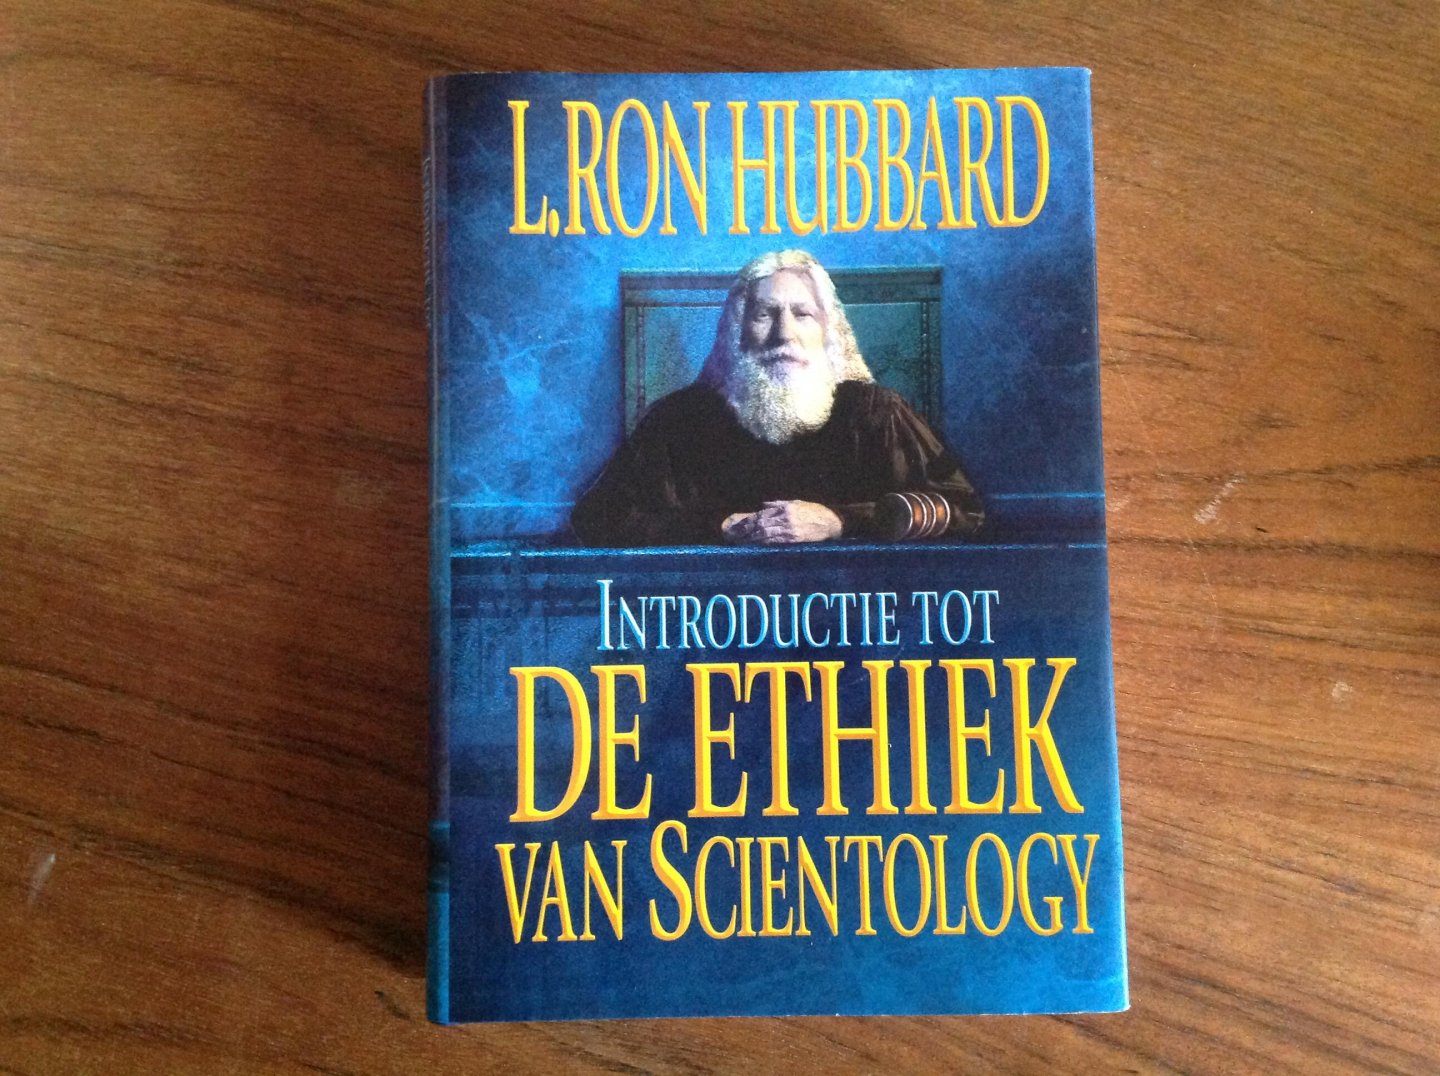 L Ron Hubbard - Introductie tot de ethiek van scientology.